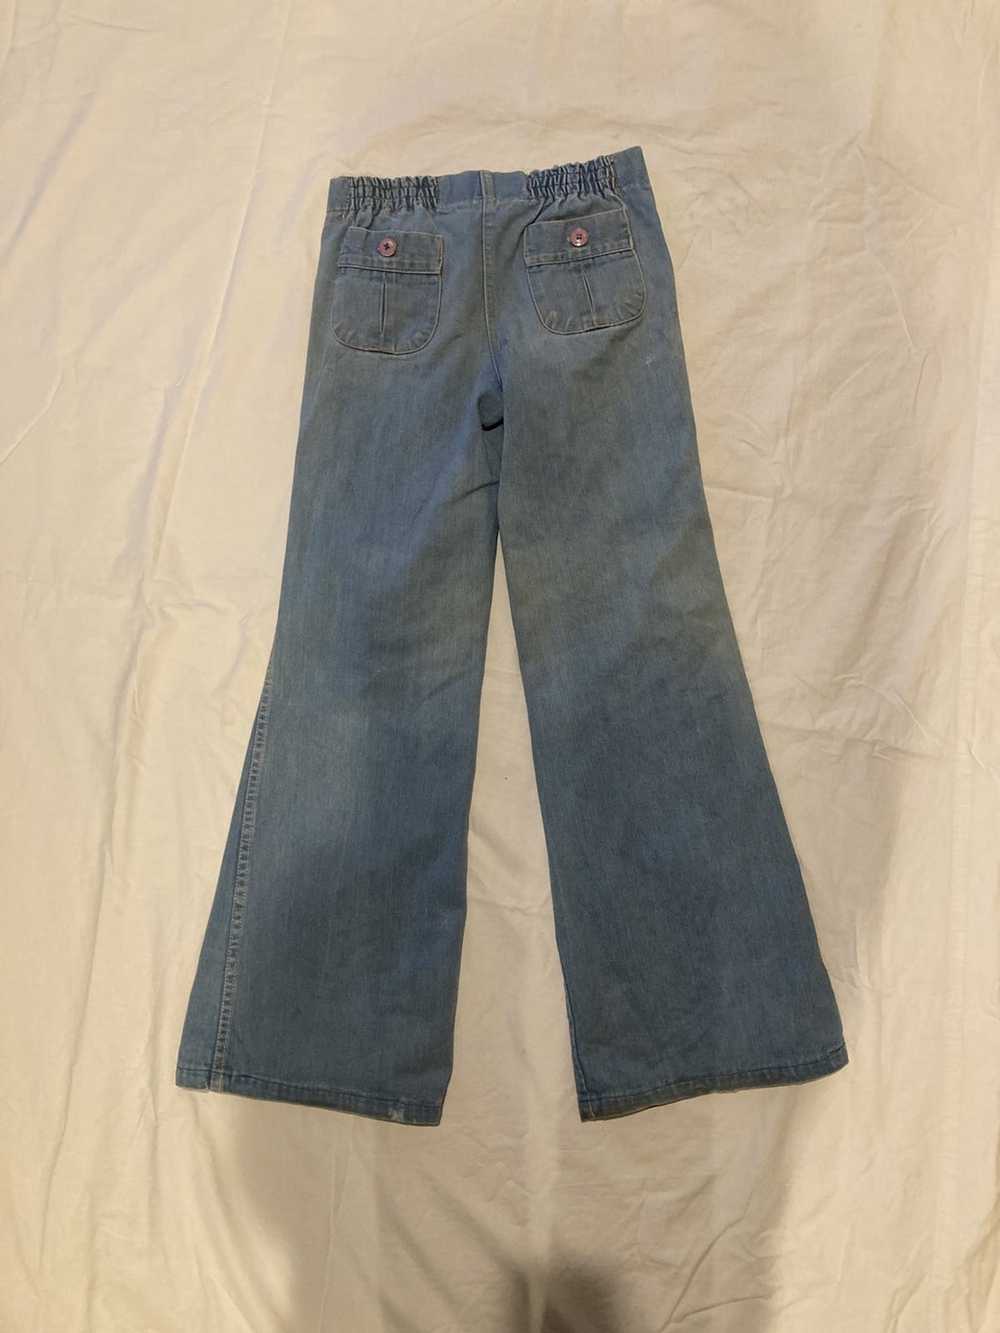 Vintage Sailor bell bottom denim jeans - image 2